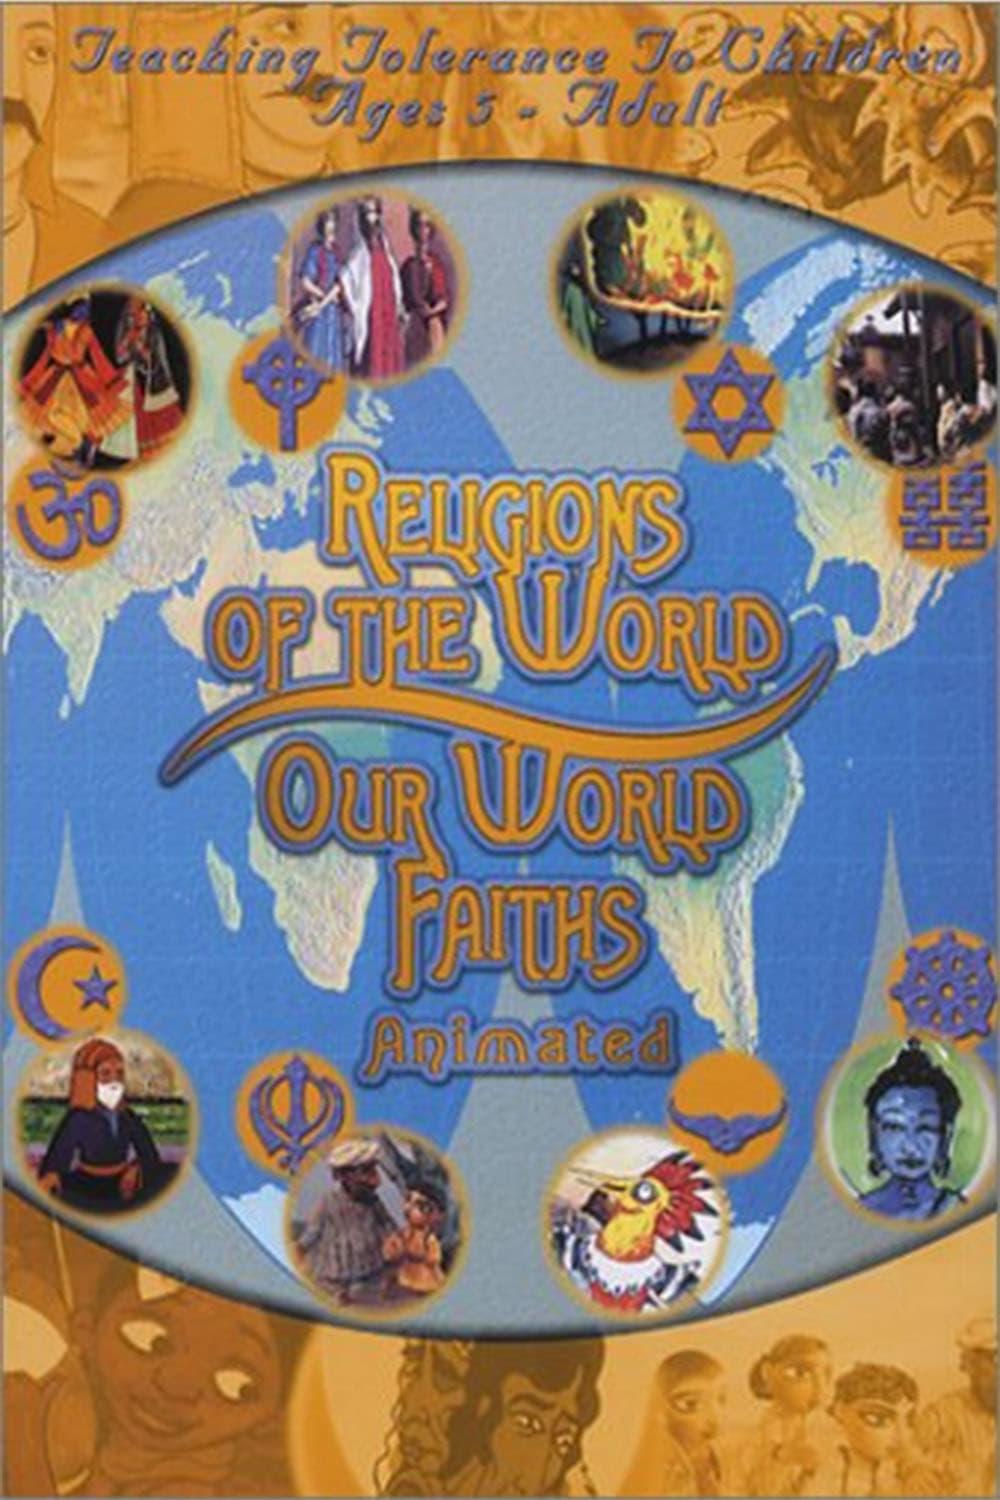 Animated World Faiths poster